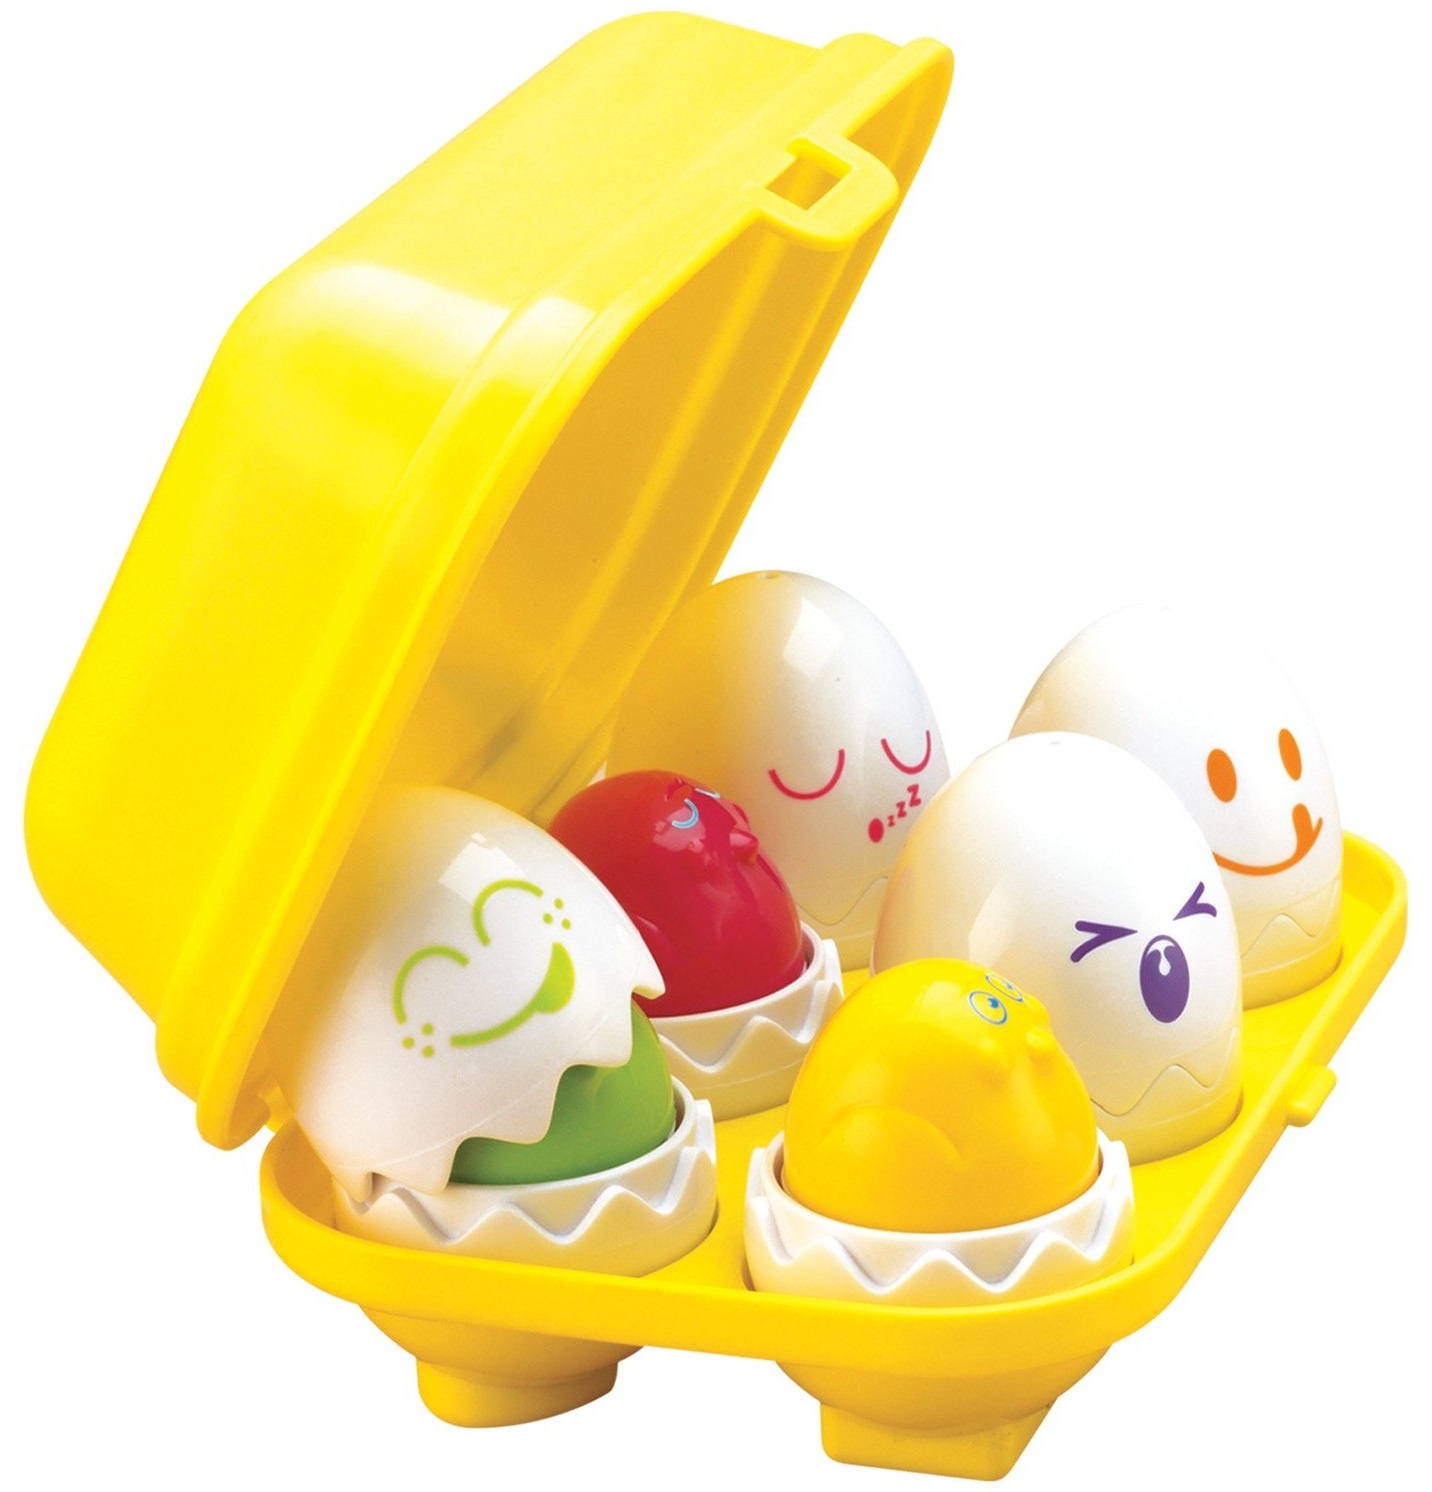 Купить яйцо детям. Сортер Tomy Toomies. Сортер яйца Tomy. Игрушка Tomy яйца Toomies. Сортер Tomy Веселые яйца.